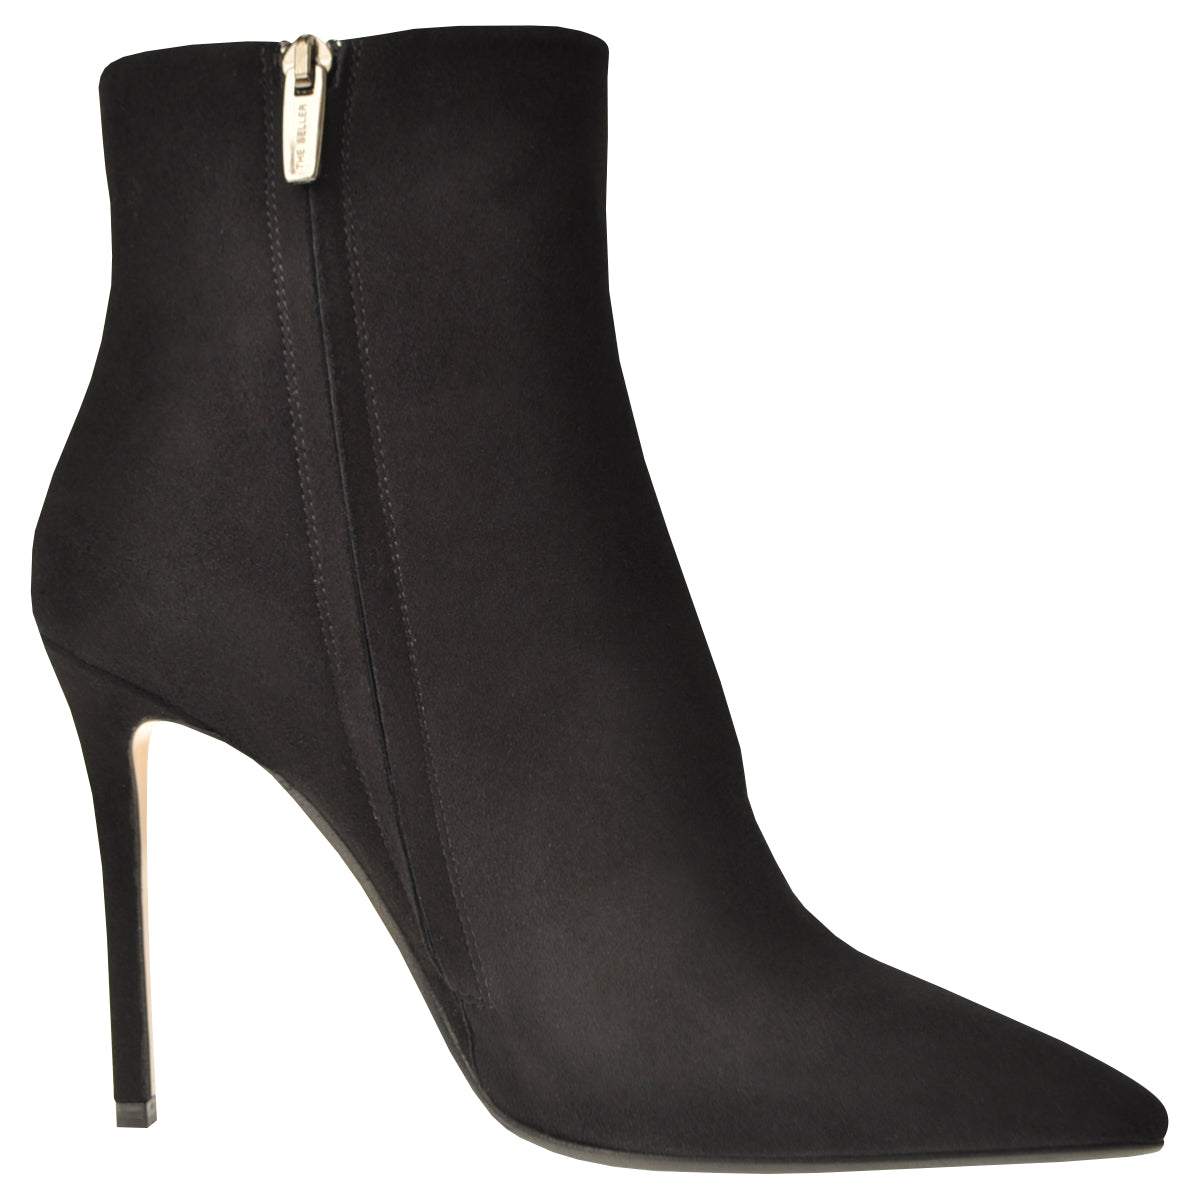 Black suede boots set on a slim stiletto heel. 